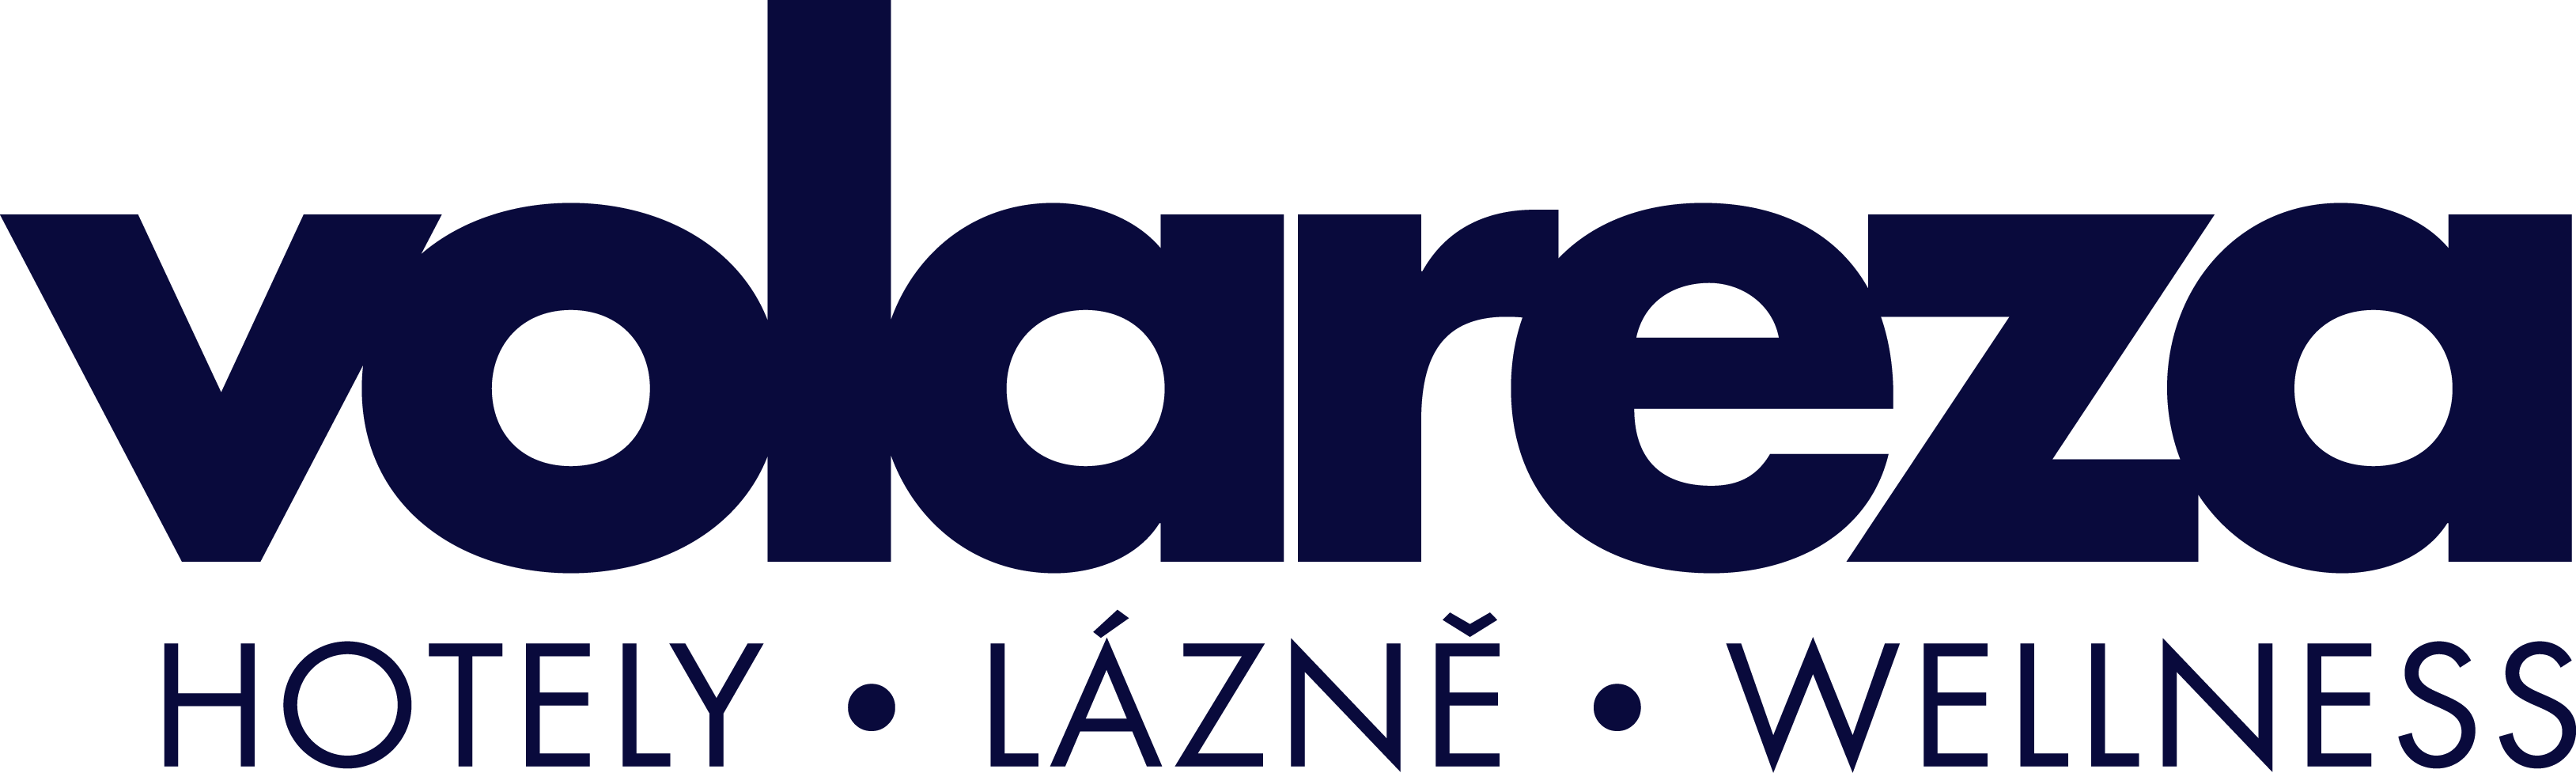 Vlrz_logo2017_zakladni